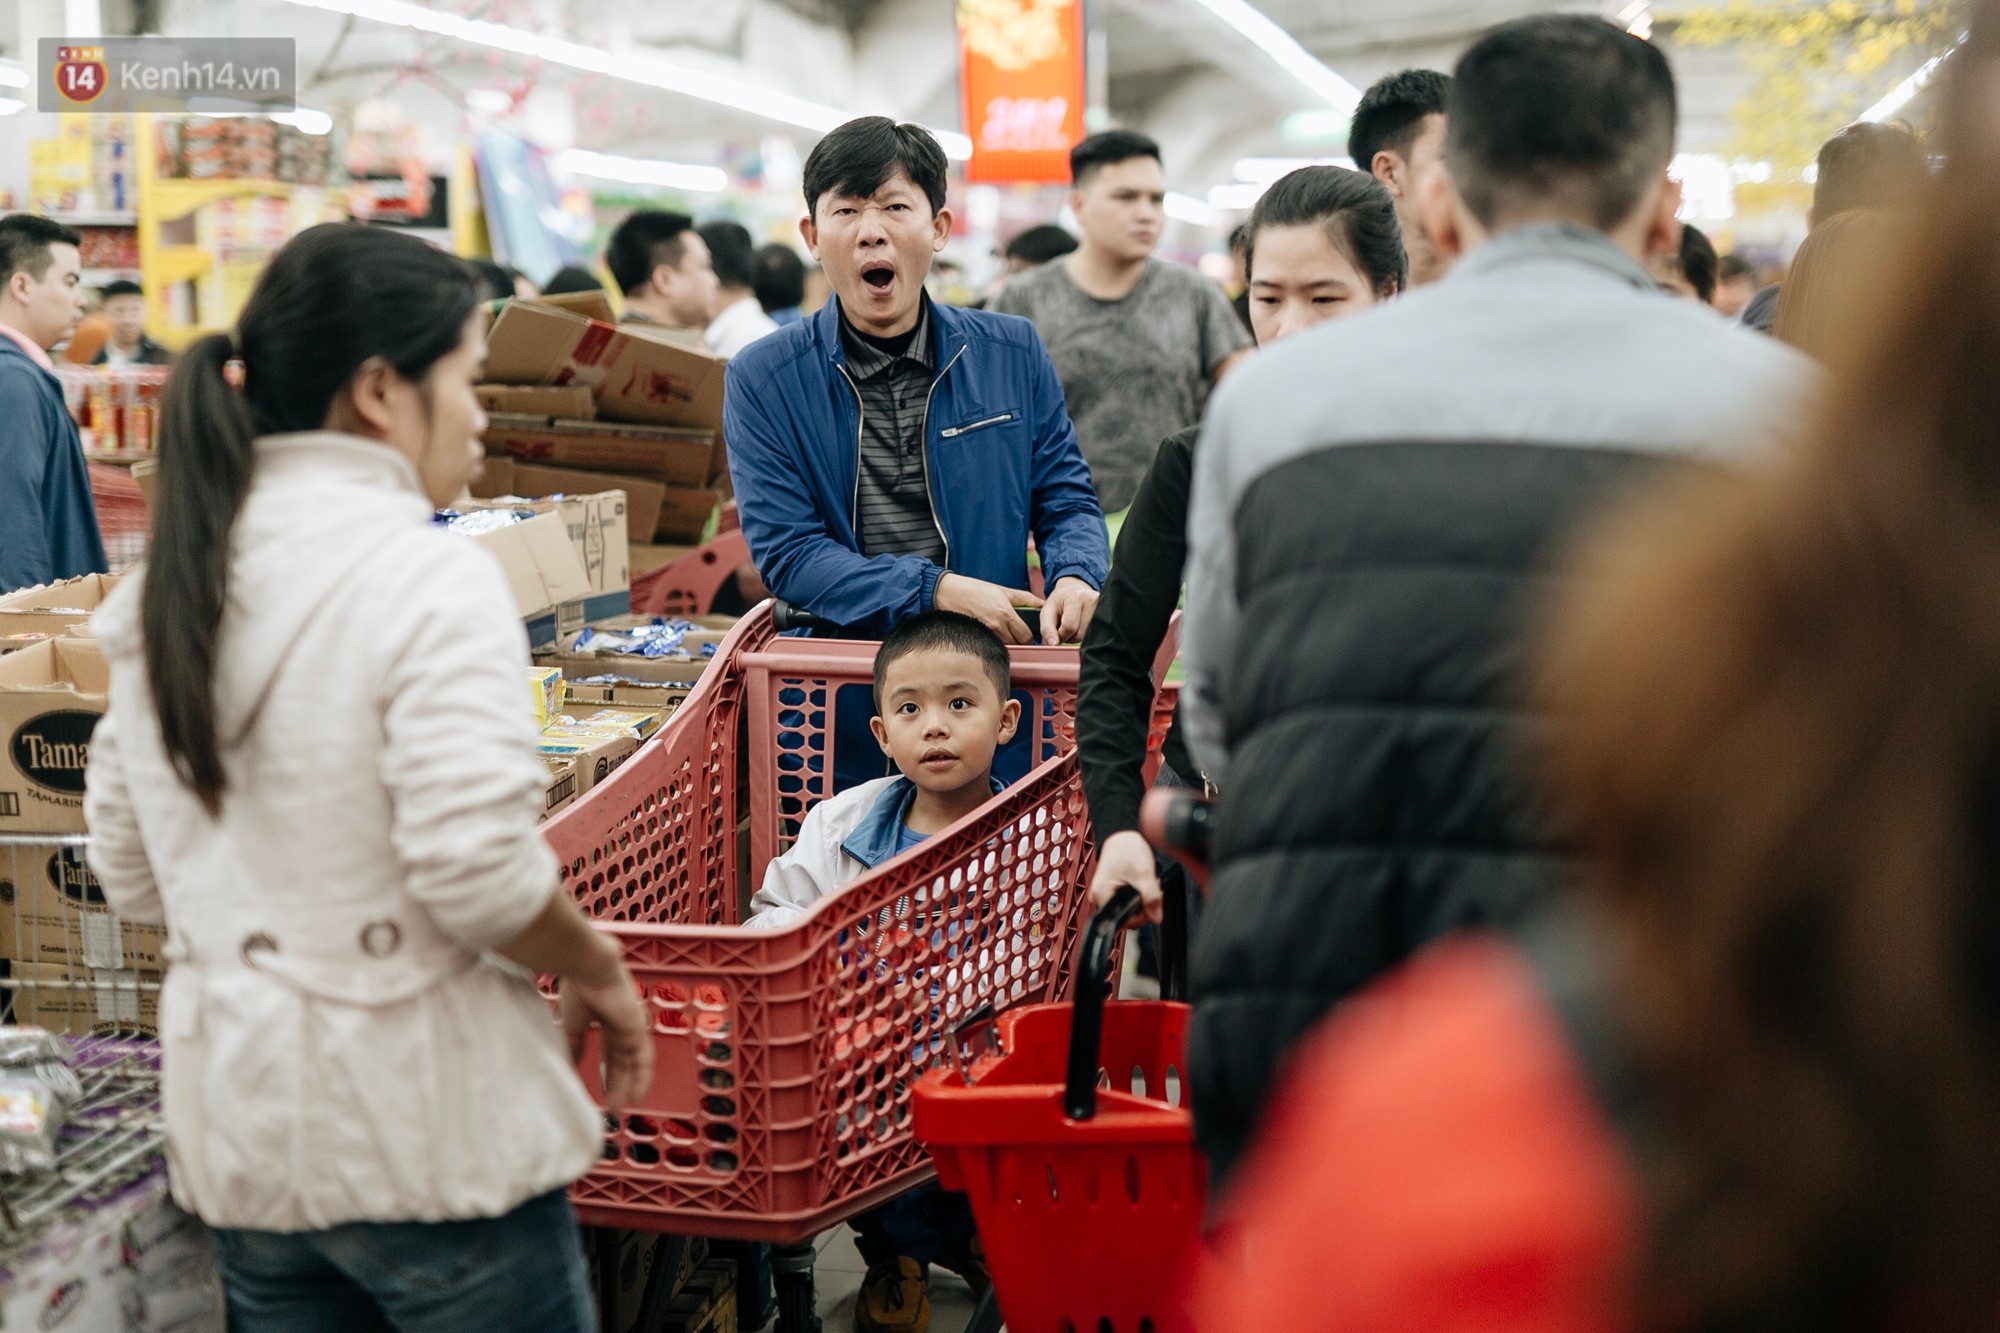 Choáng với cảnh siêu thị ở Hà Nội kín đặc người ngày cuối năm, khách trèo lên cả kệ hàng để mua sắm-22